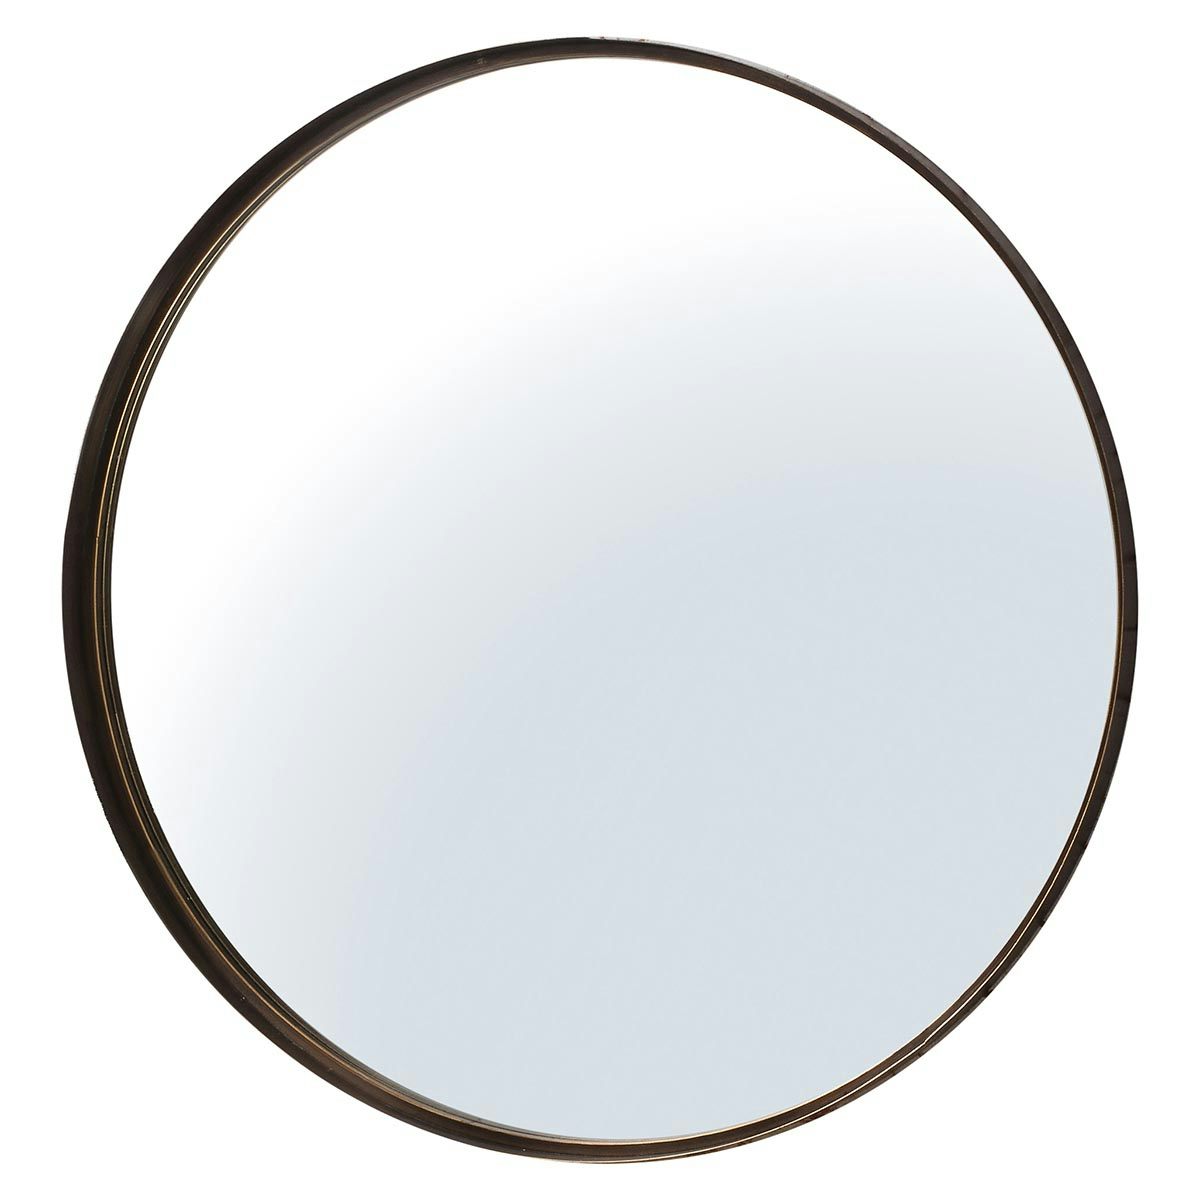 Accents Greystoke round antique bronze mirror 840 x 840mm